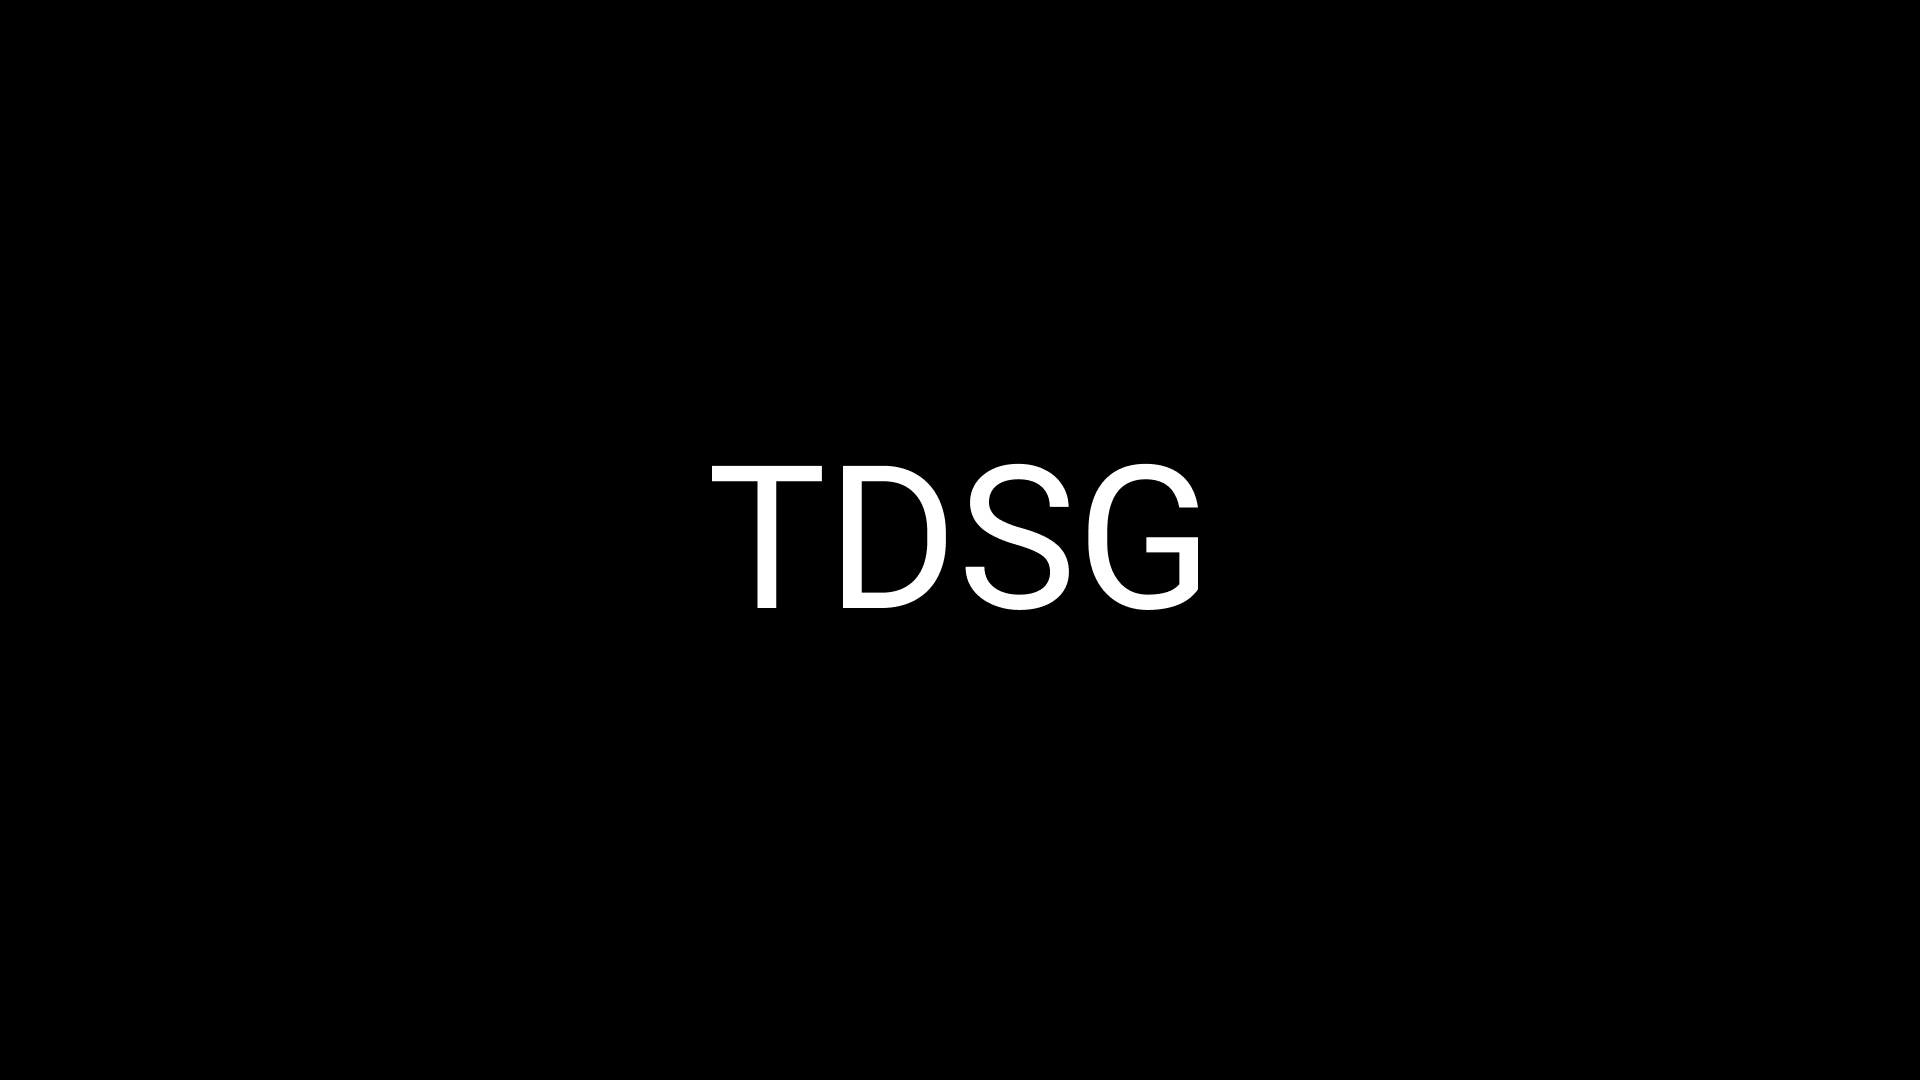 Banner of टीडीएस ग्लोबल डेमो 